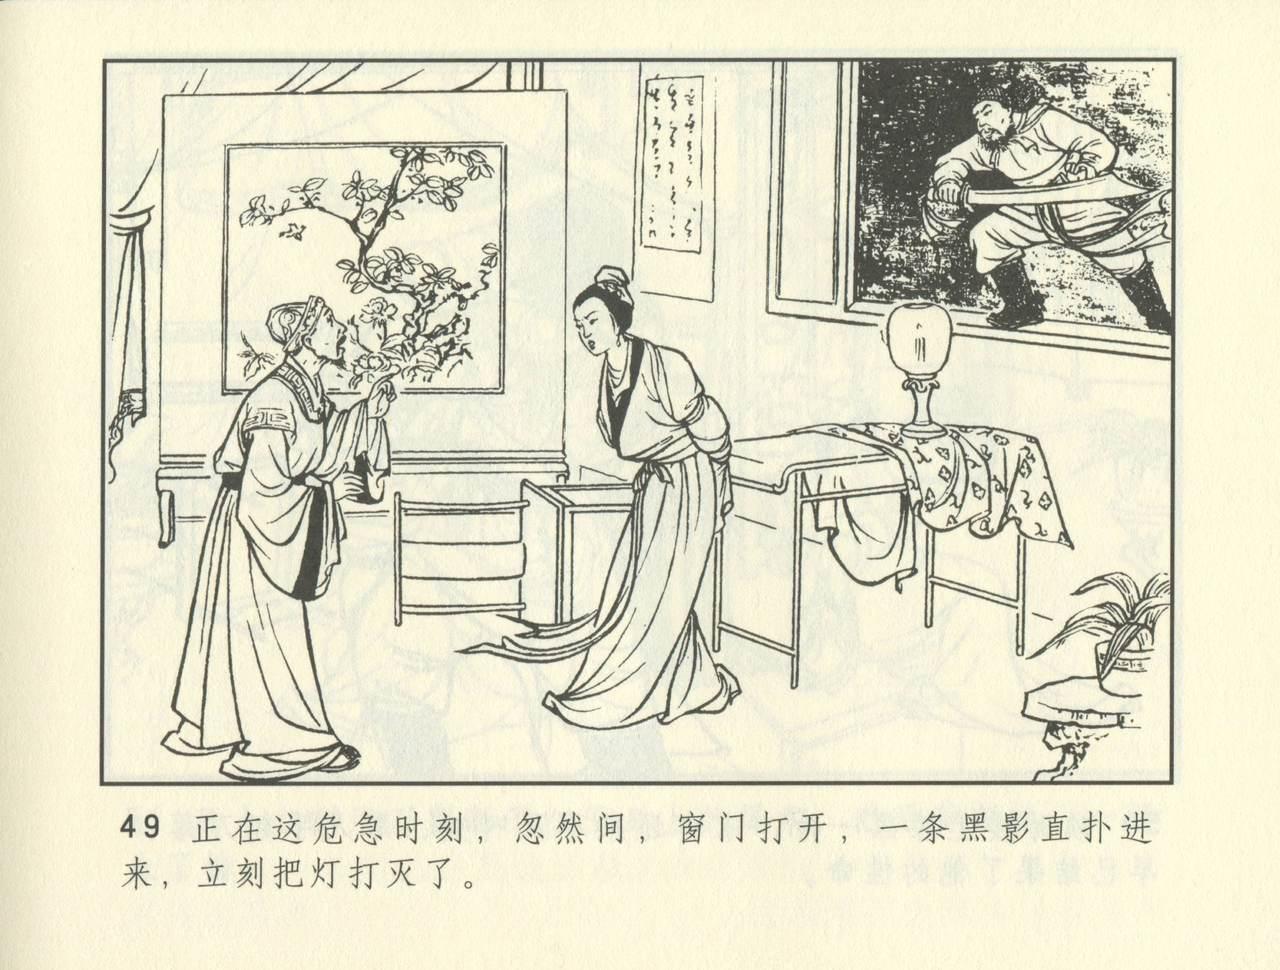 聊斋志异 张玮等绘 天津人民美术出版社 卷二十一 ~ 三十 389